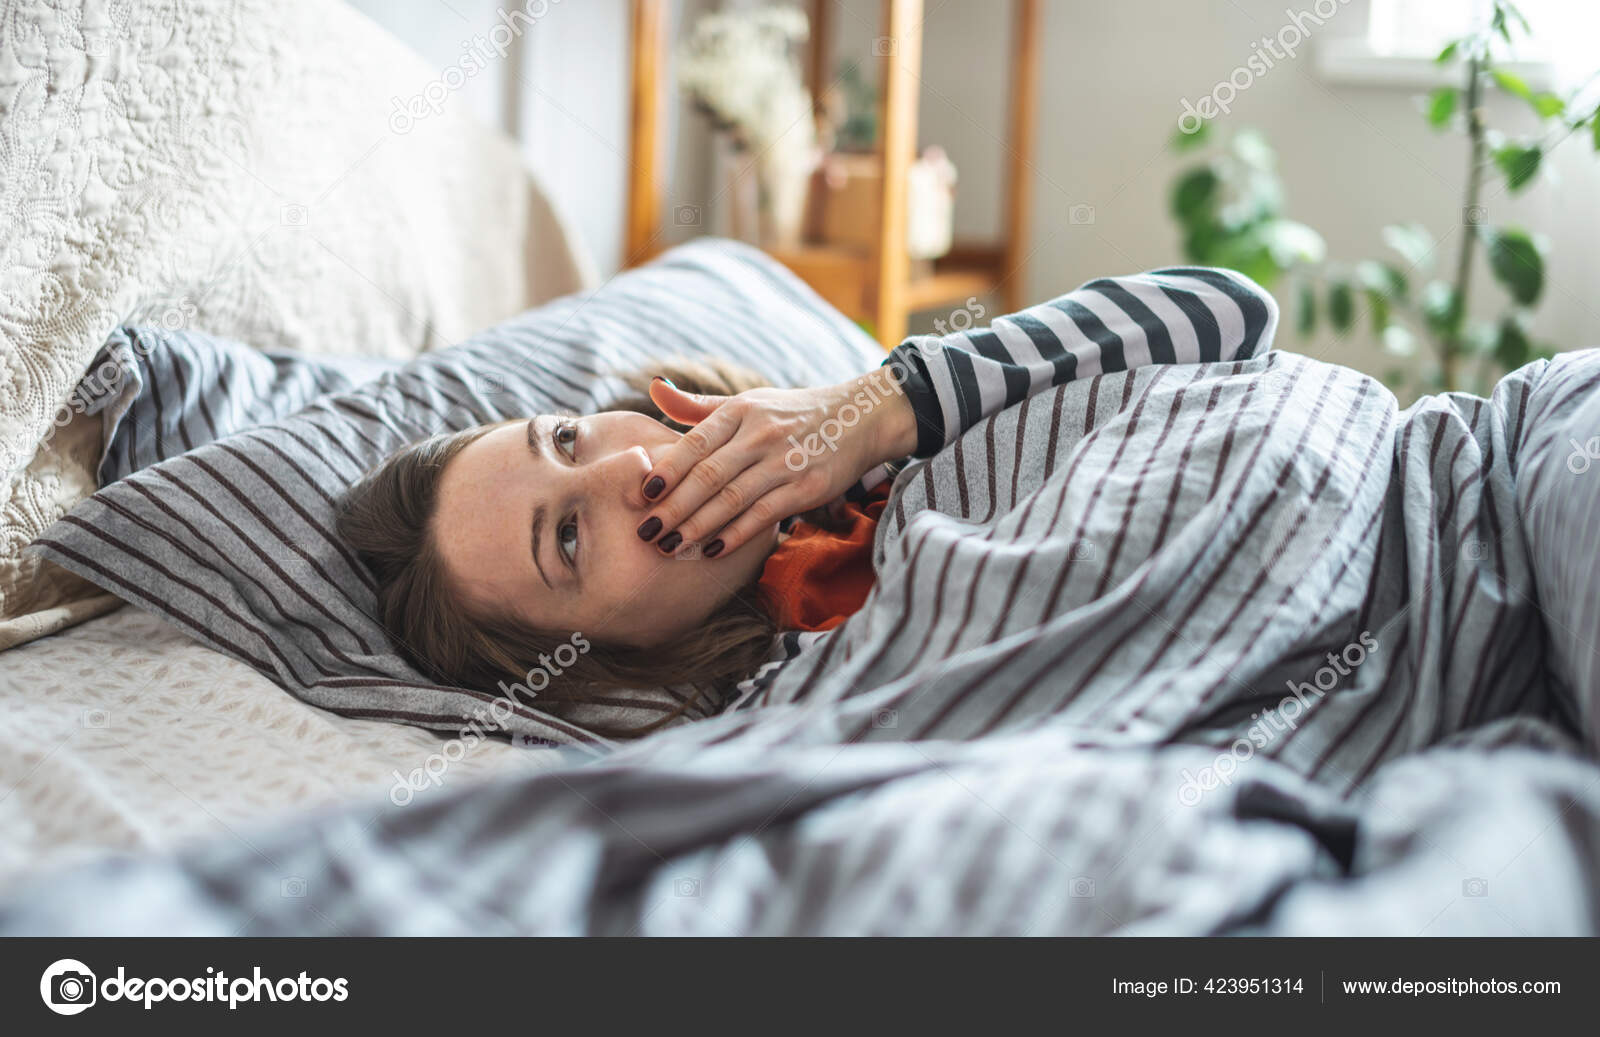 Женщина в бюстгальтере спит в уютной постели